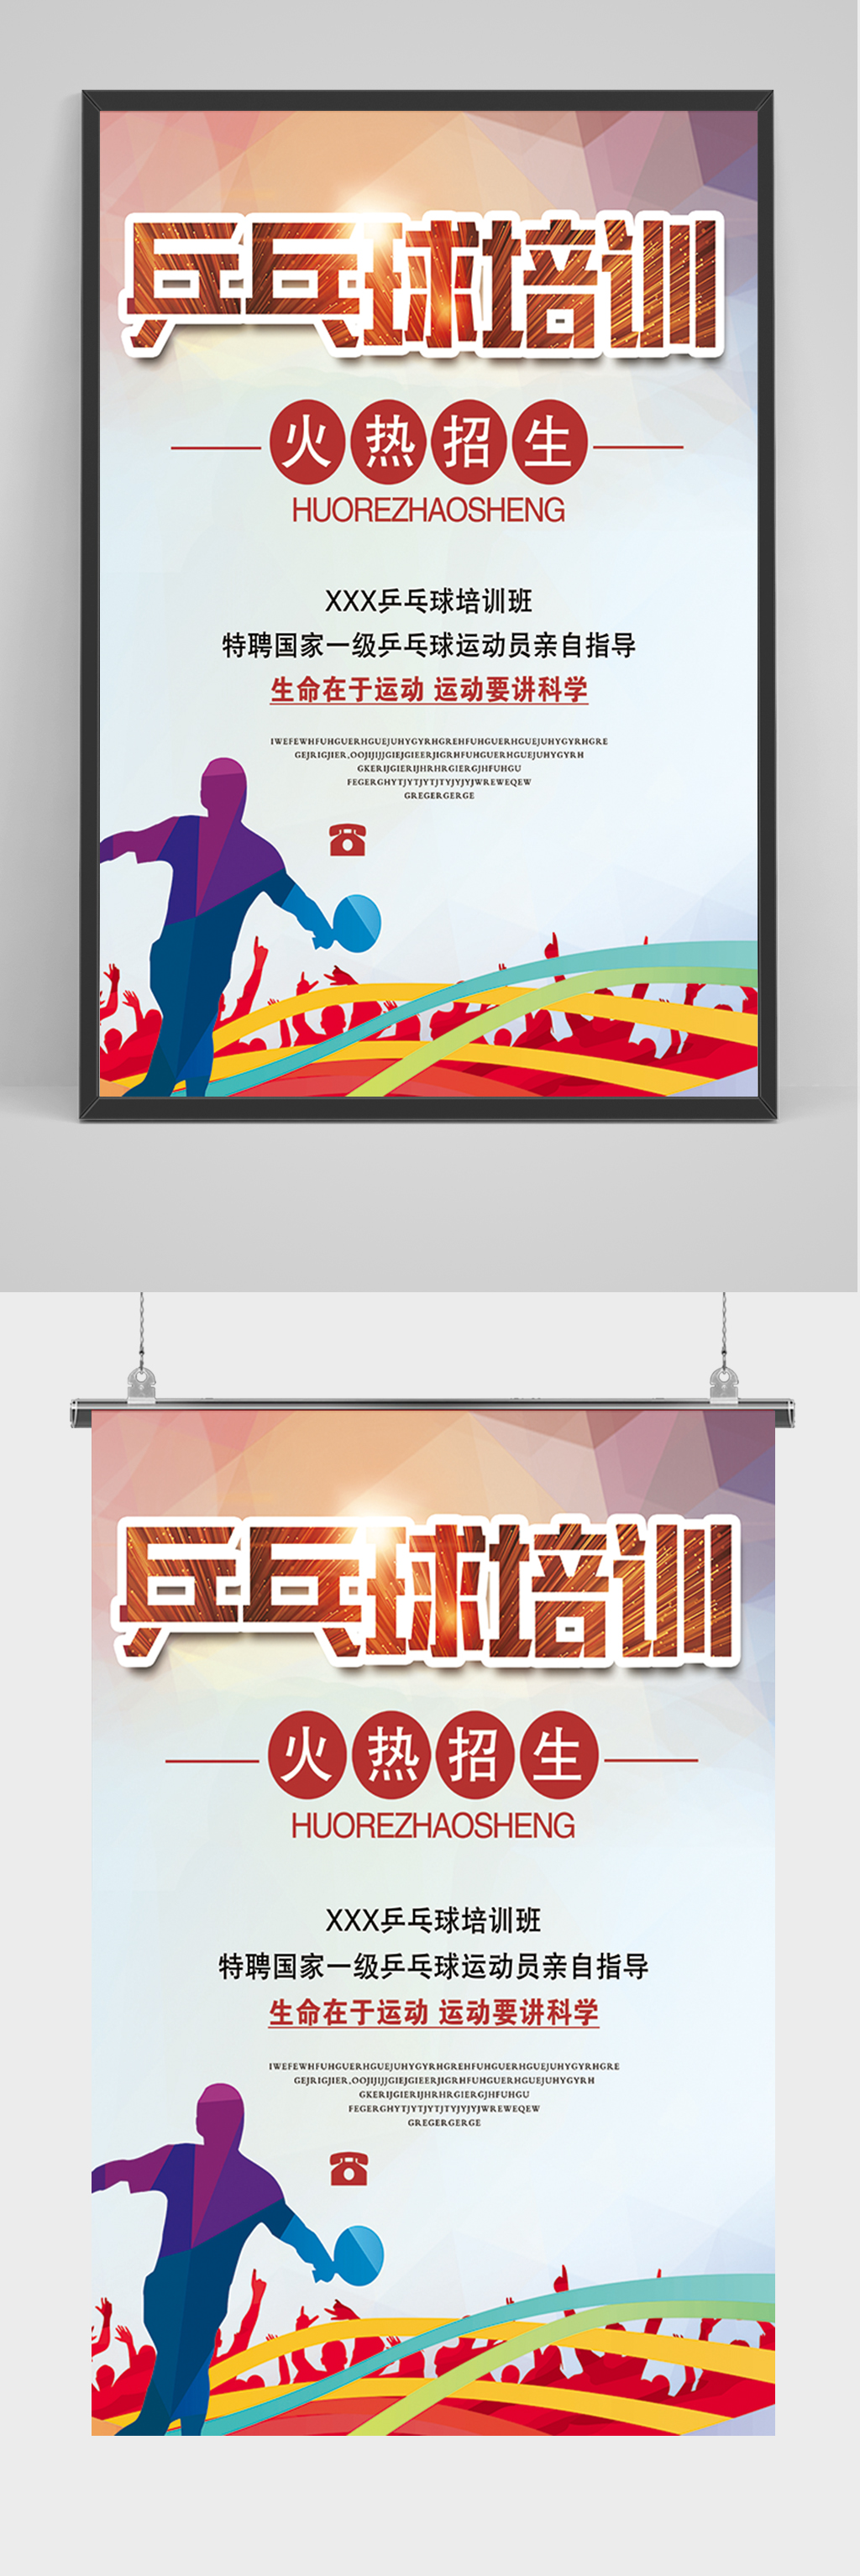 立即下载校级乒乓球决赛大pk乒乓球室宣传挂画海报立即下载手绘清新